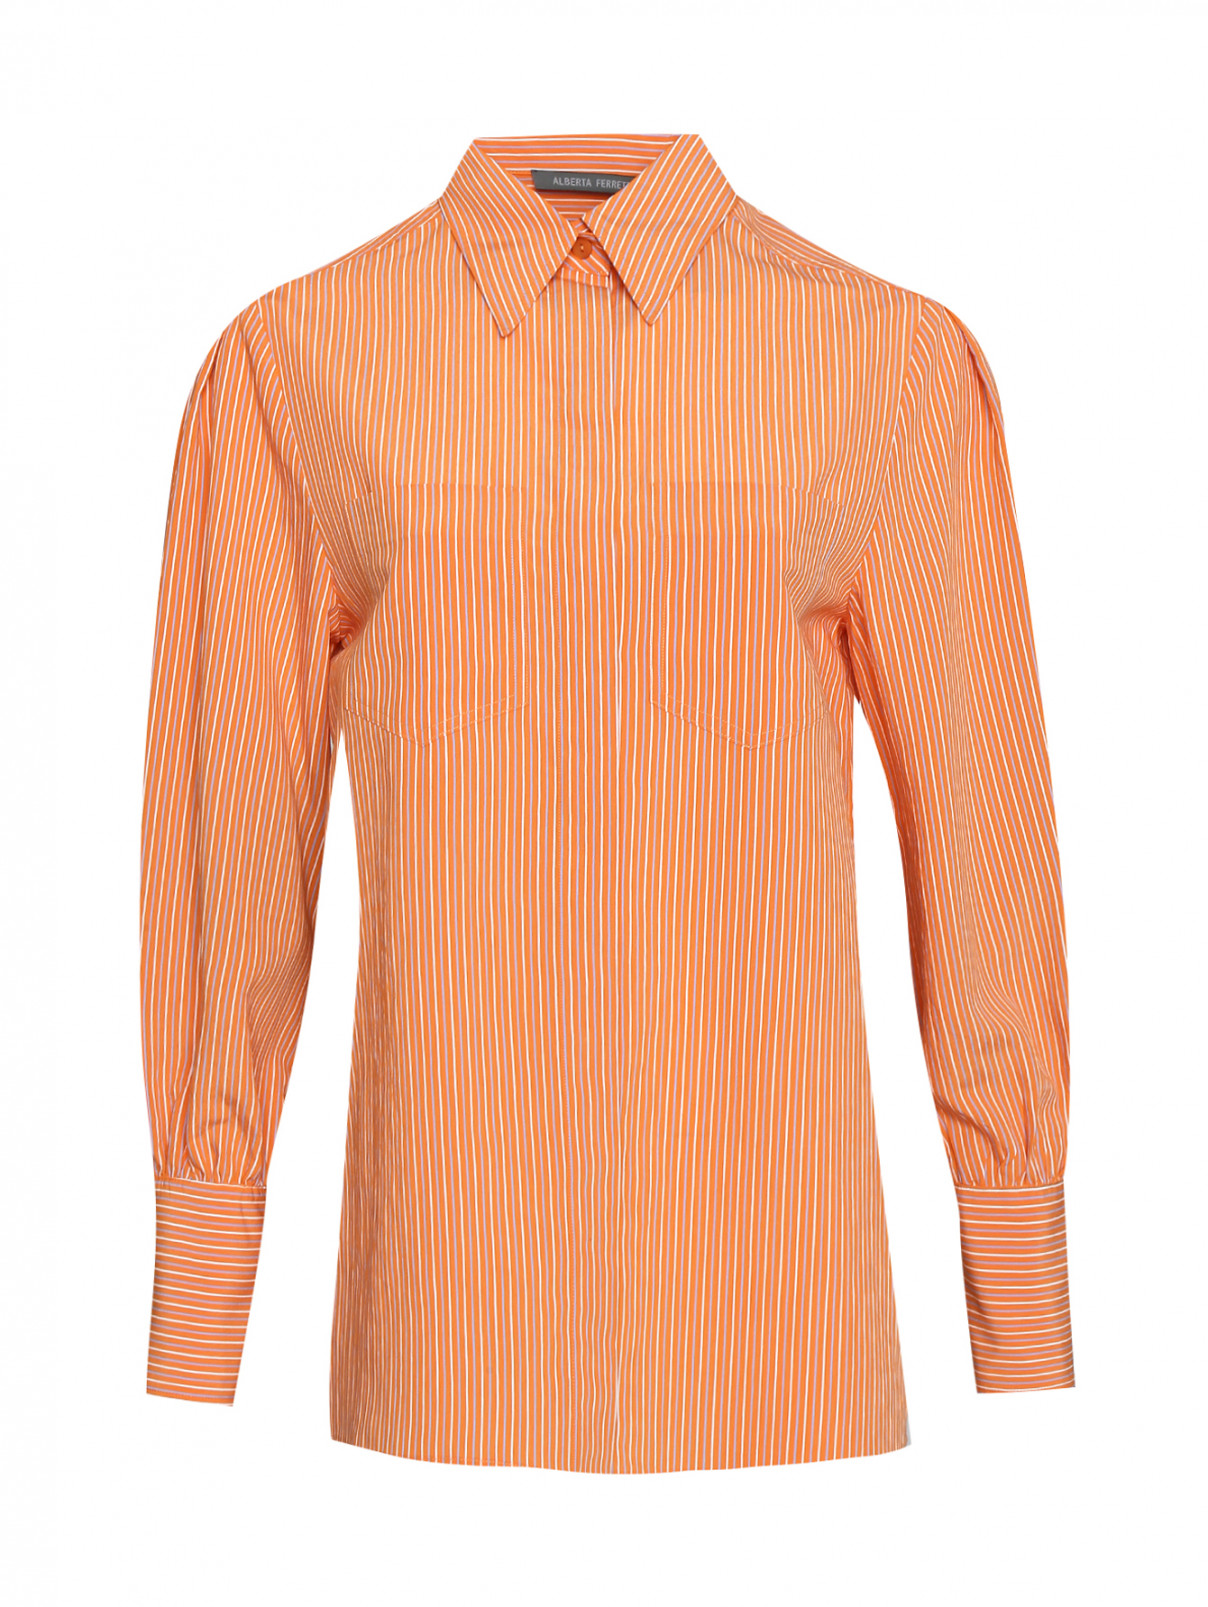 Рубашка из вискозы в полоску Alberta Ferretti  –  Общий вид  – Цвет:  Оранжевый